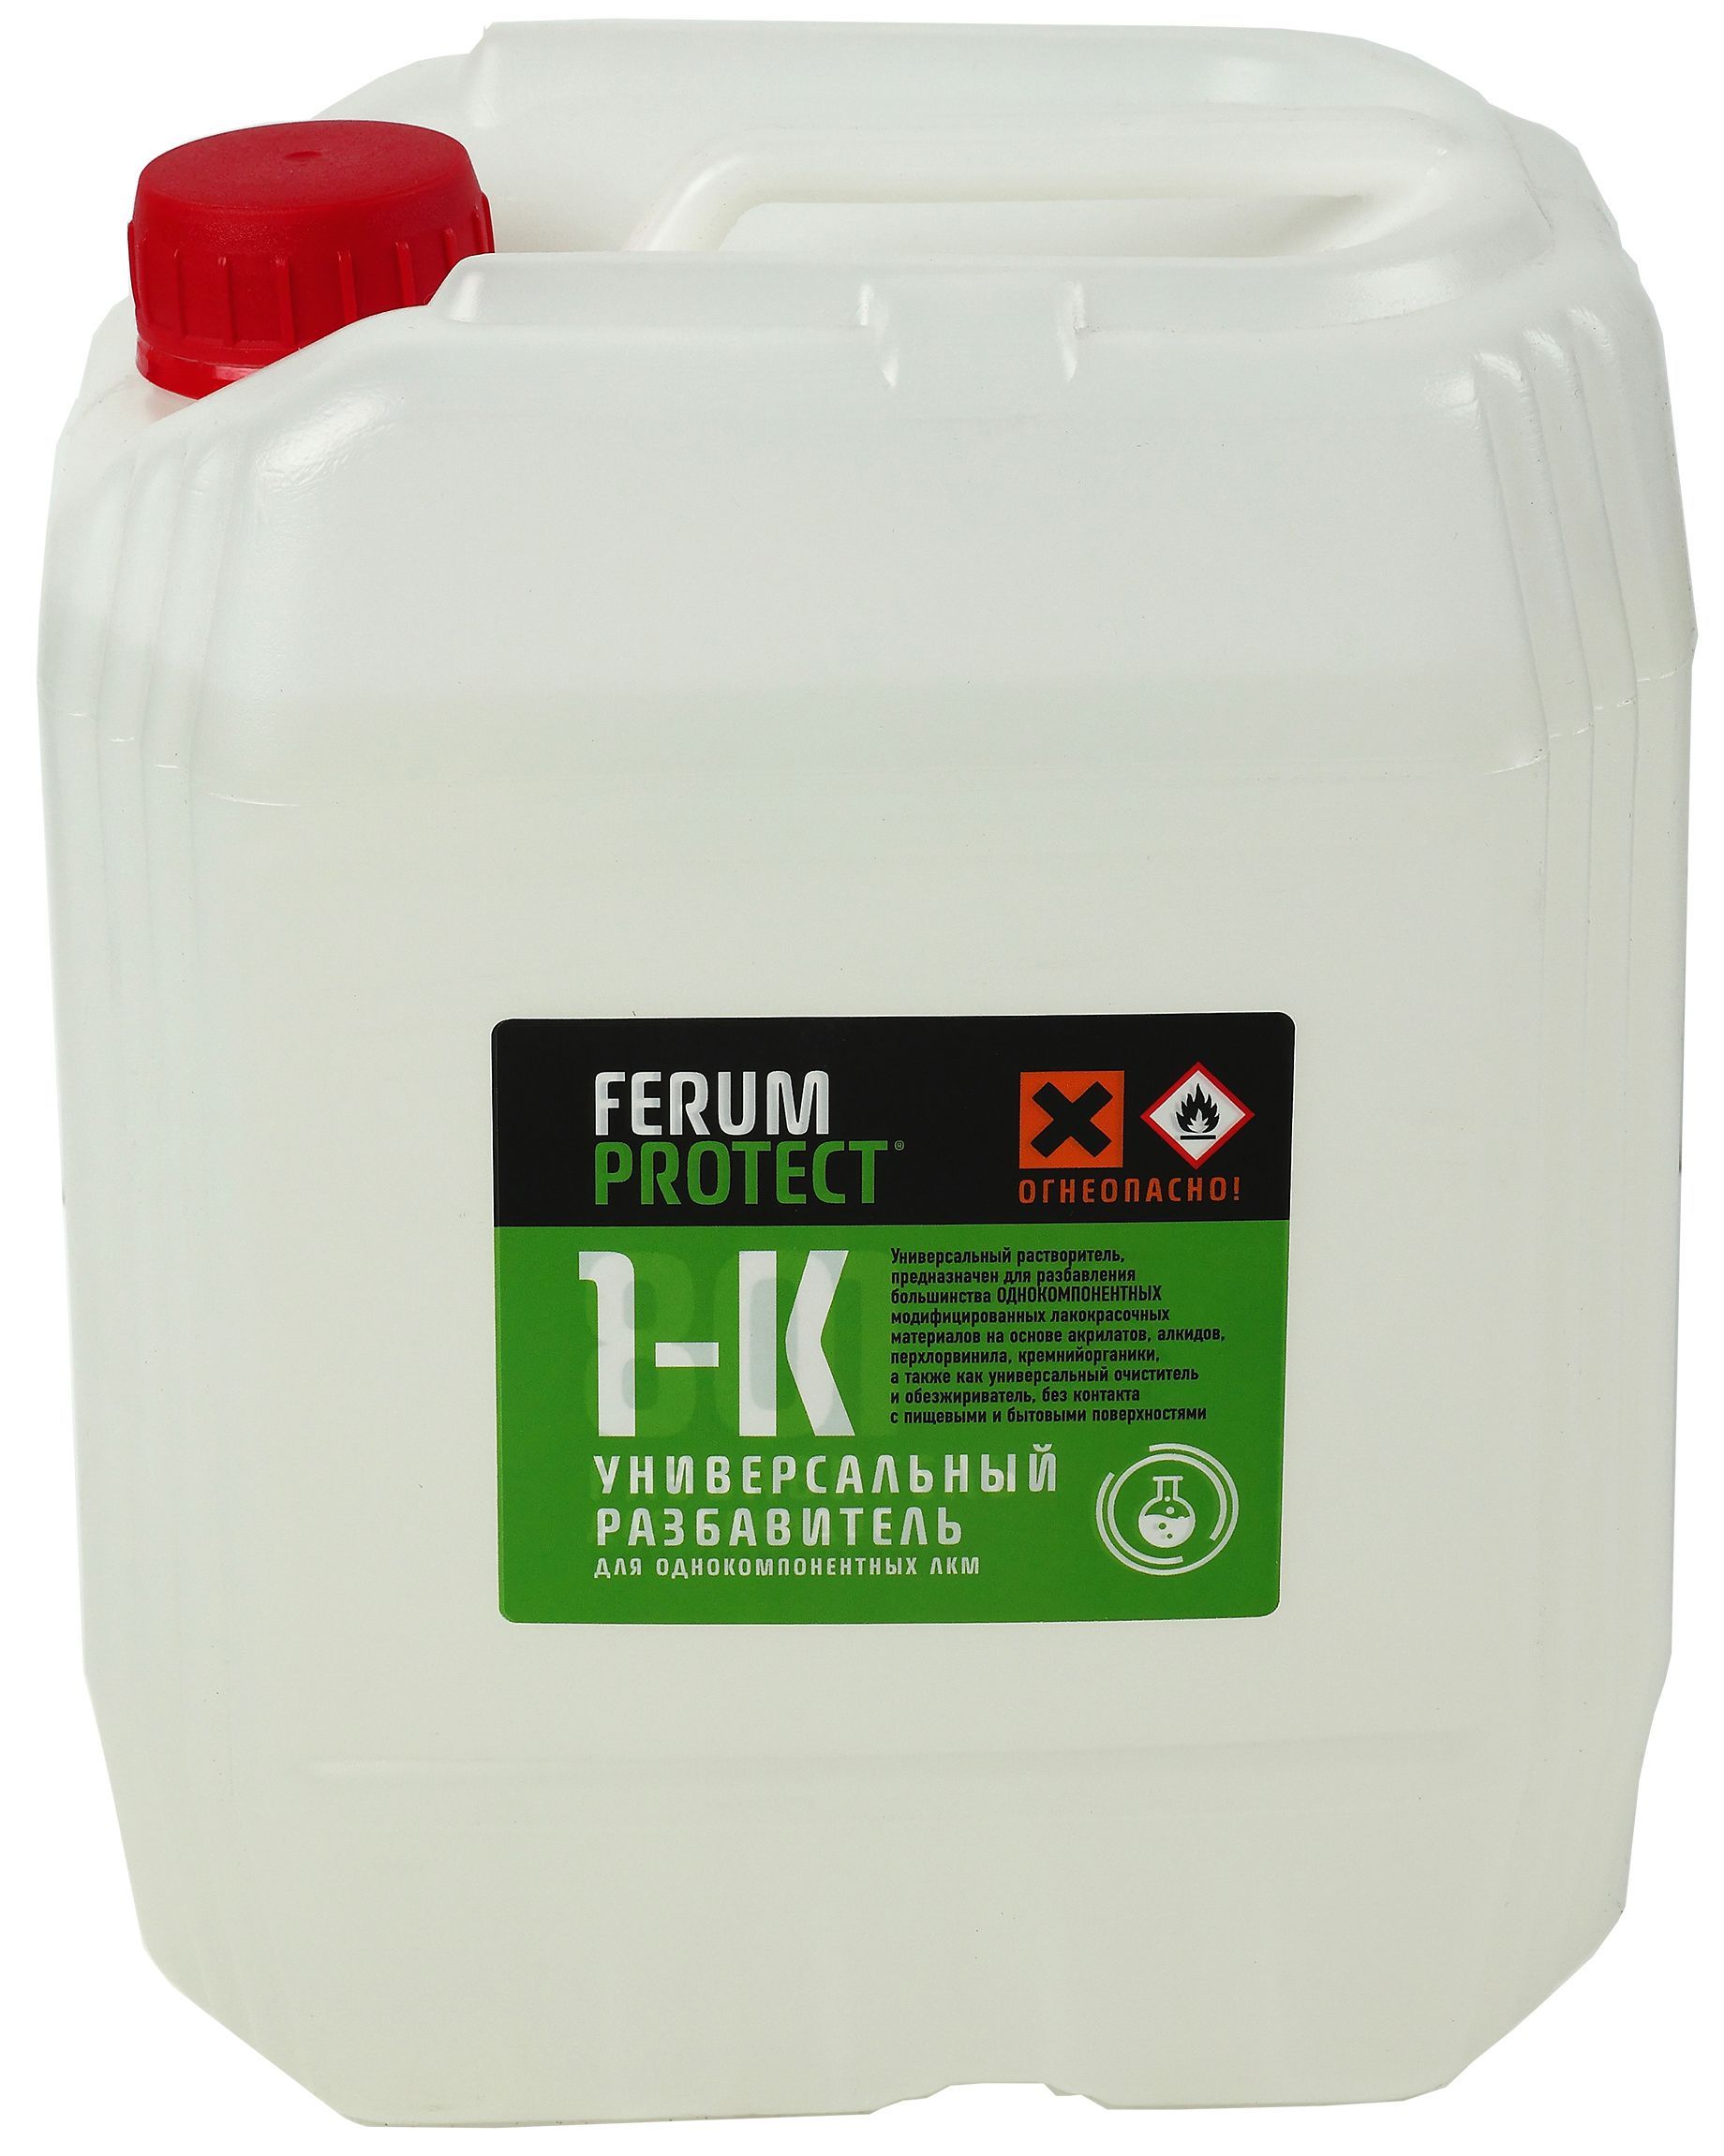 Ferumprotect-1к растворитель для 1-компонентных